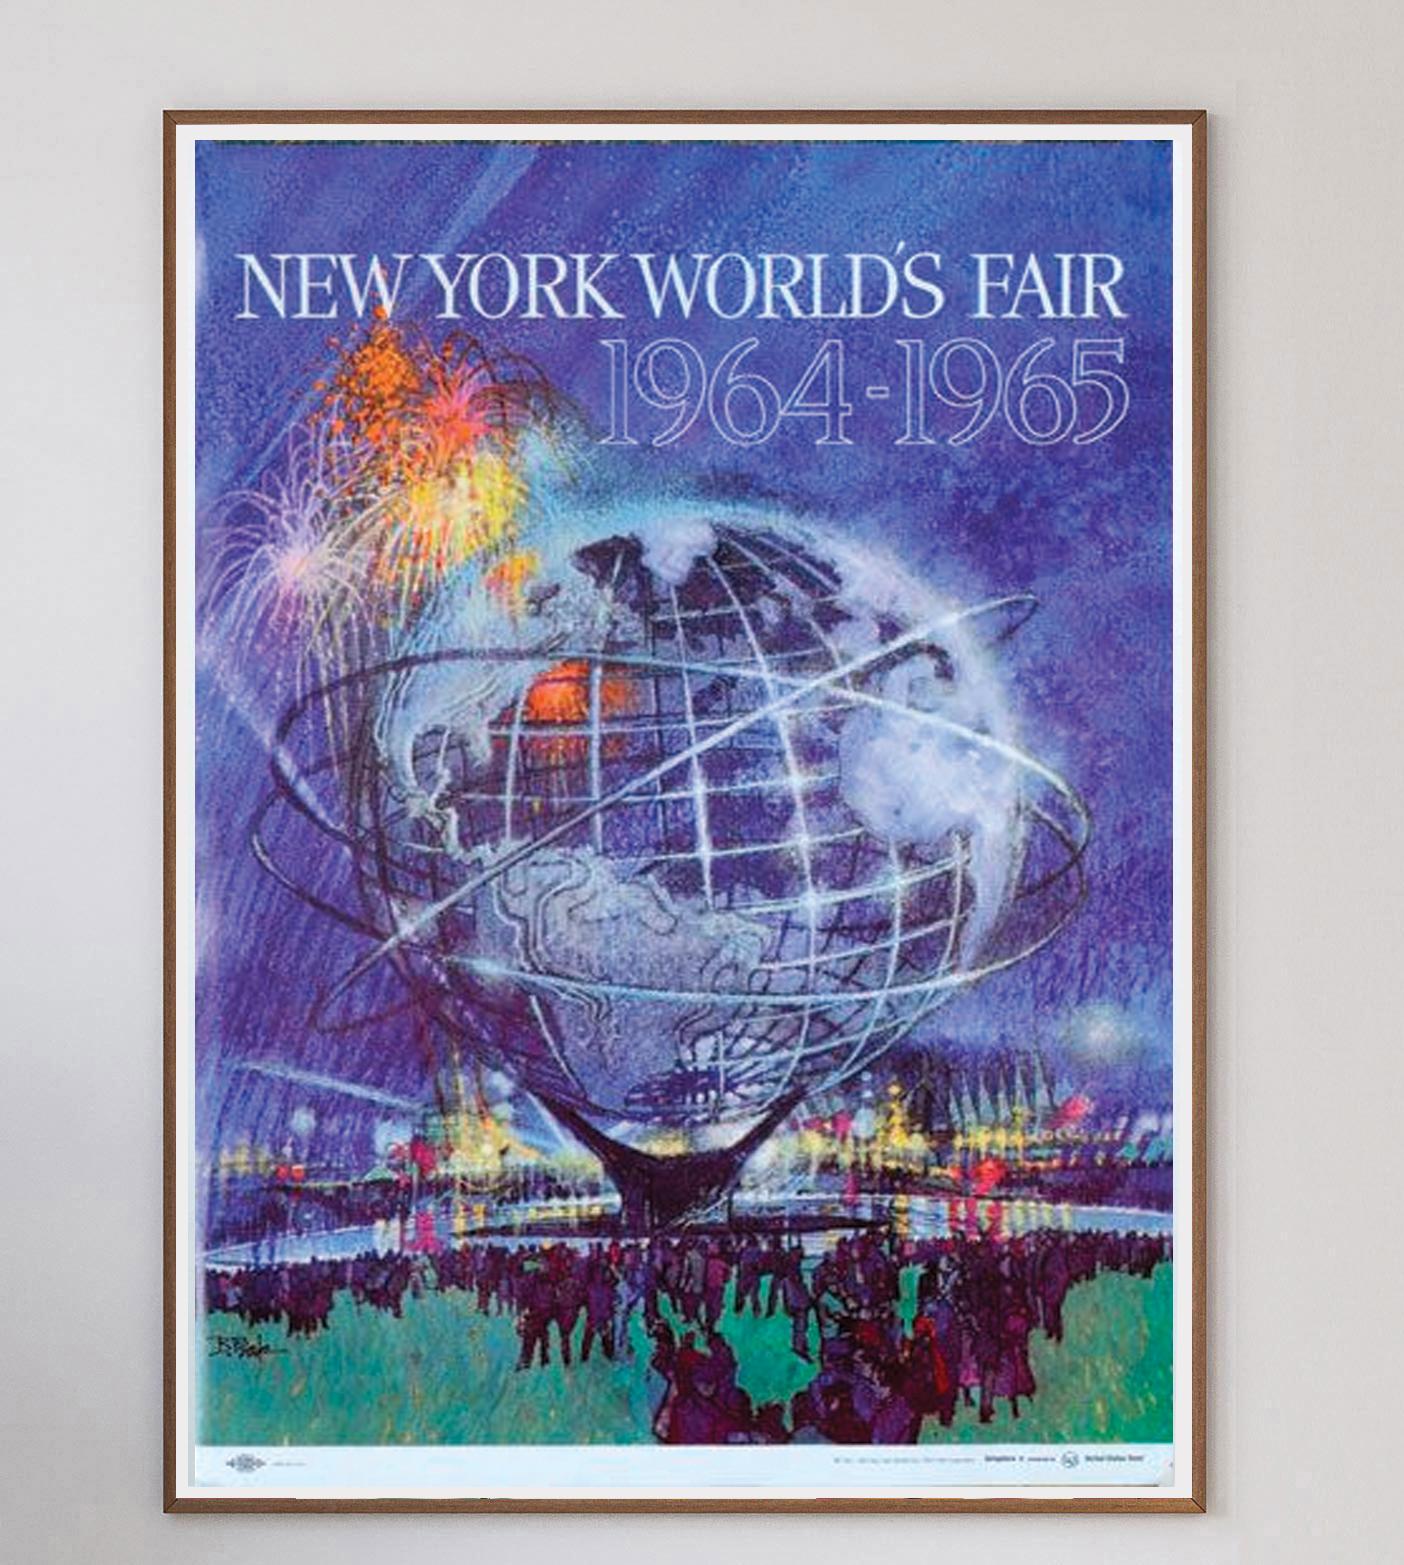 Die New Yorker Weltausstellung 1964/1965 gilt als das ultimative Schaufenster für die Verheißungen der Jahrhundertmitte und war eine Weltausstellung, auf der Technologie, Kultur und Unternehmen gefeiert wurden. Inmitten der Kulisse des